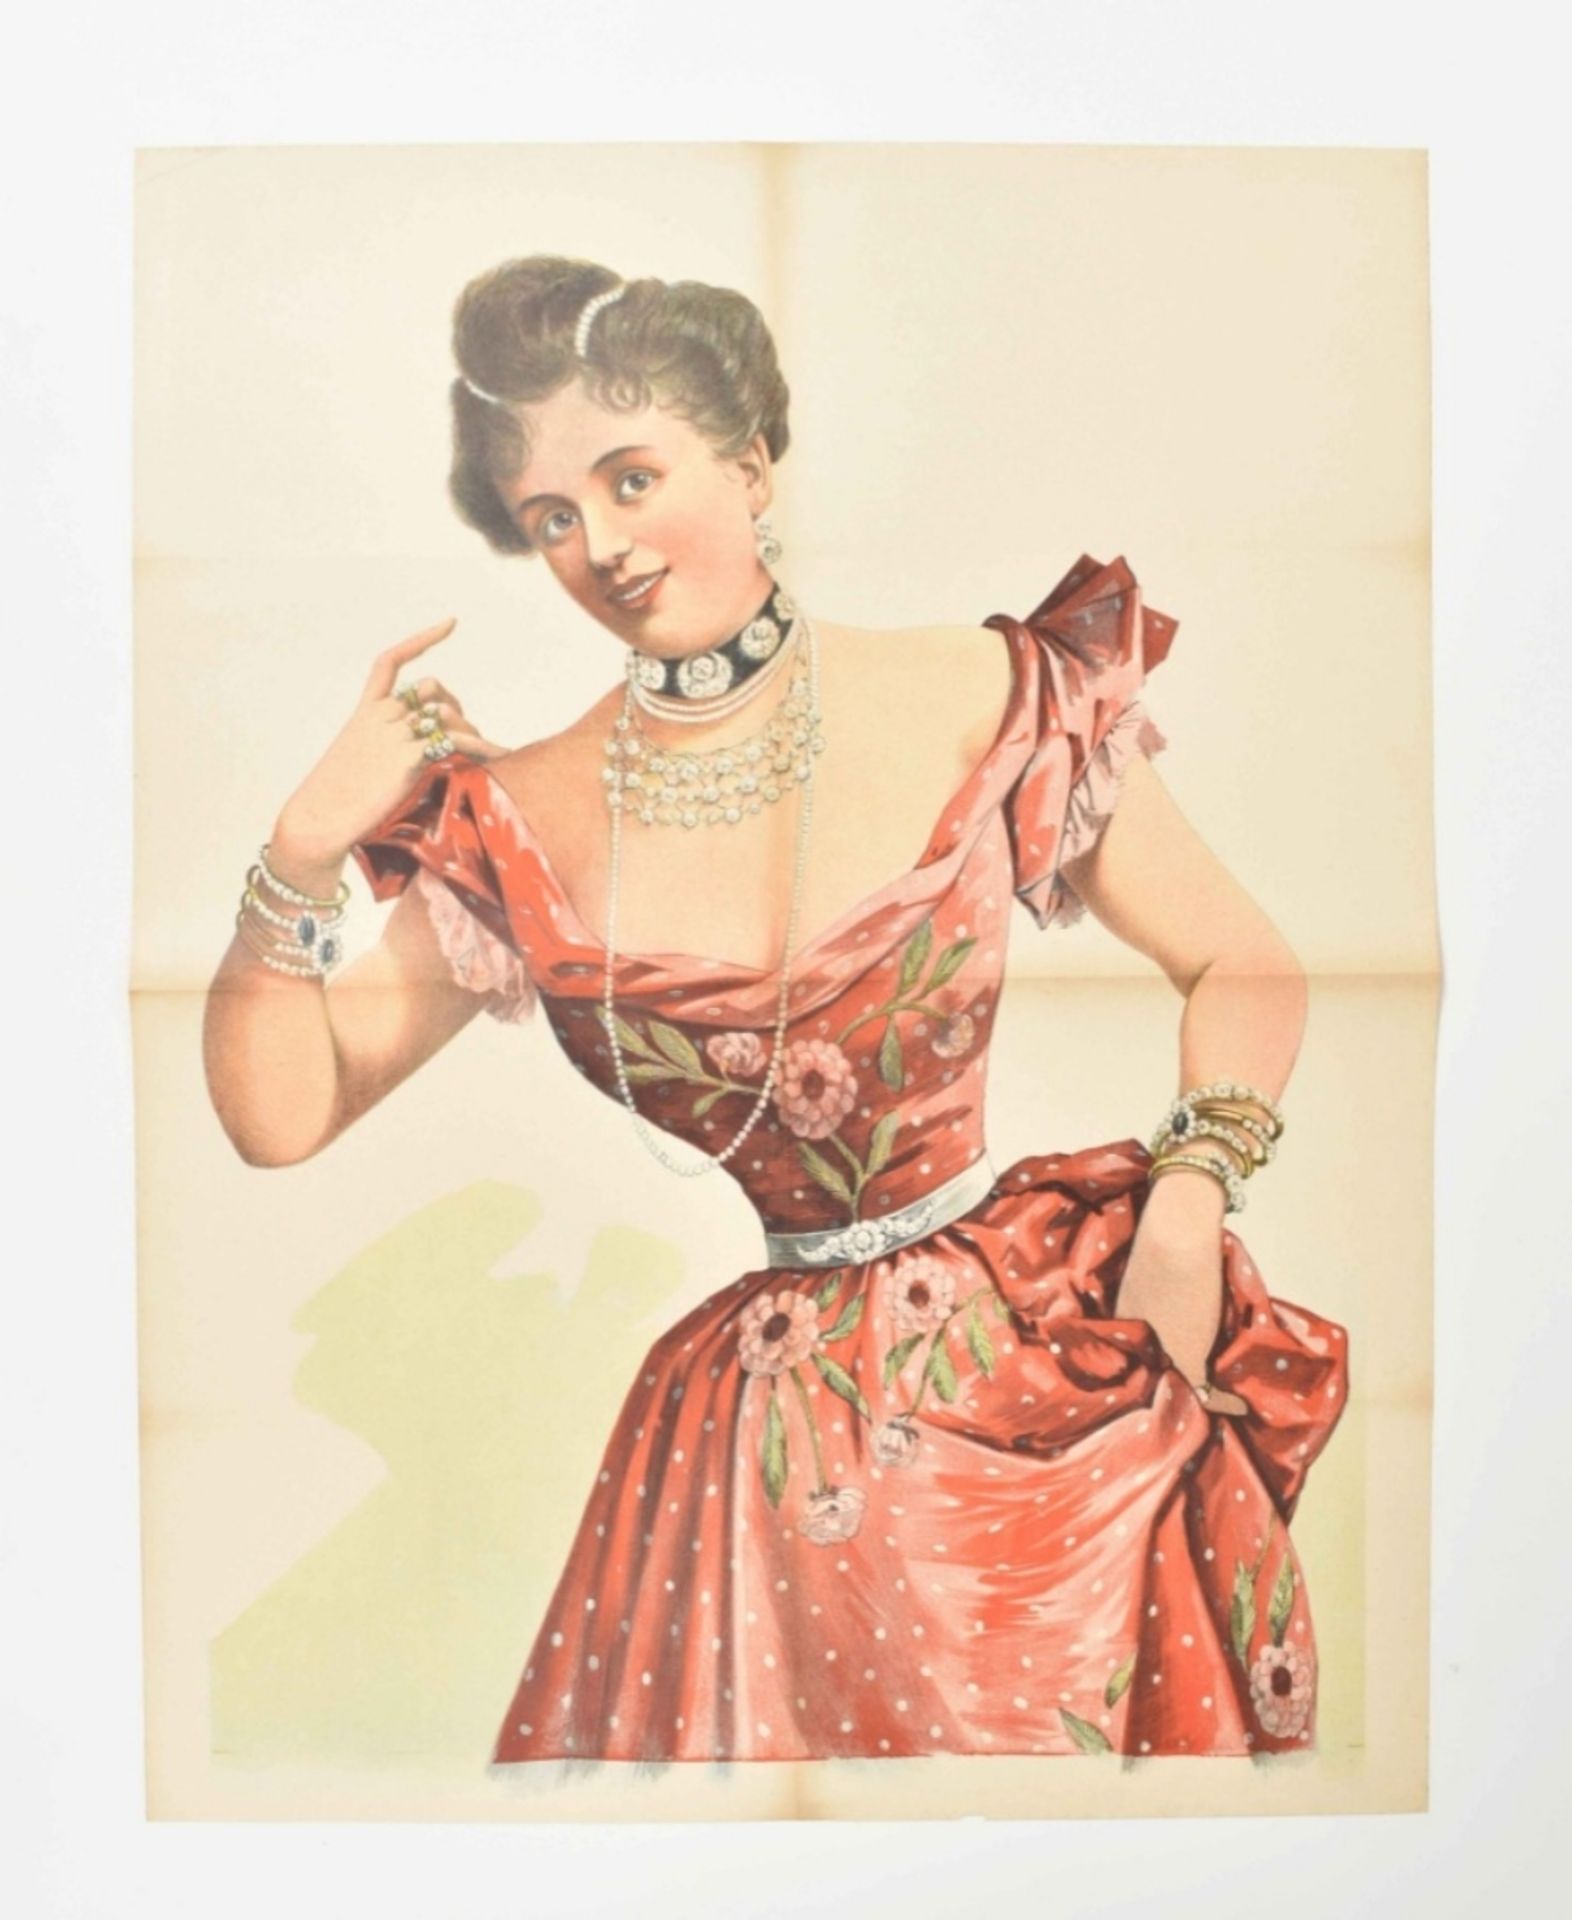 [Entertainment] Nora Gillis. La reine du chic Friedländer, Hamburg, 1891 - Bild 3 aus 6